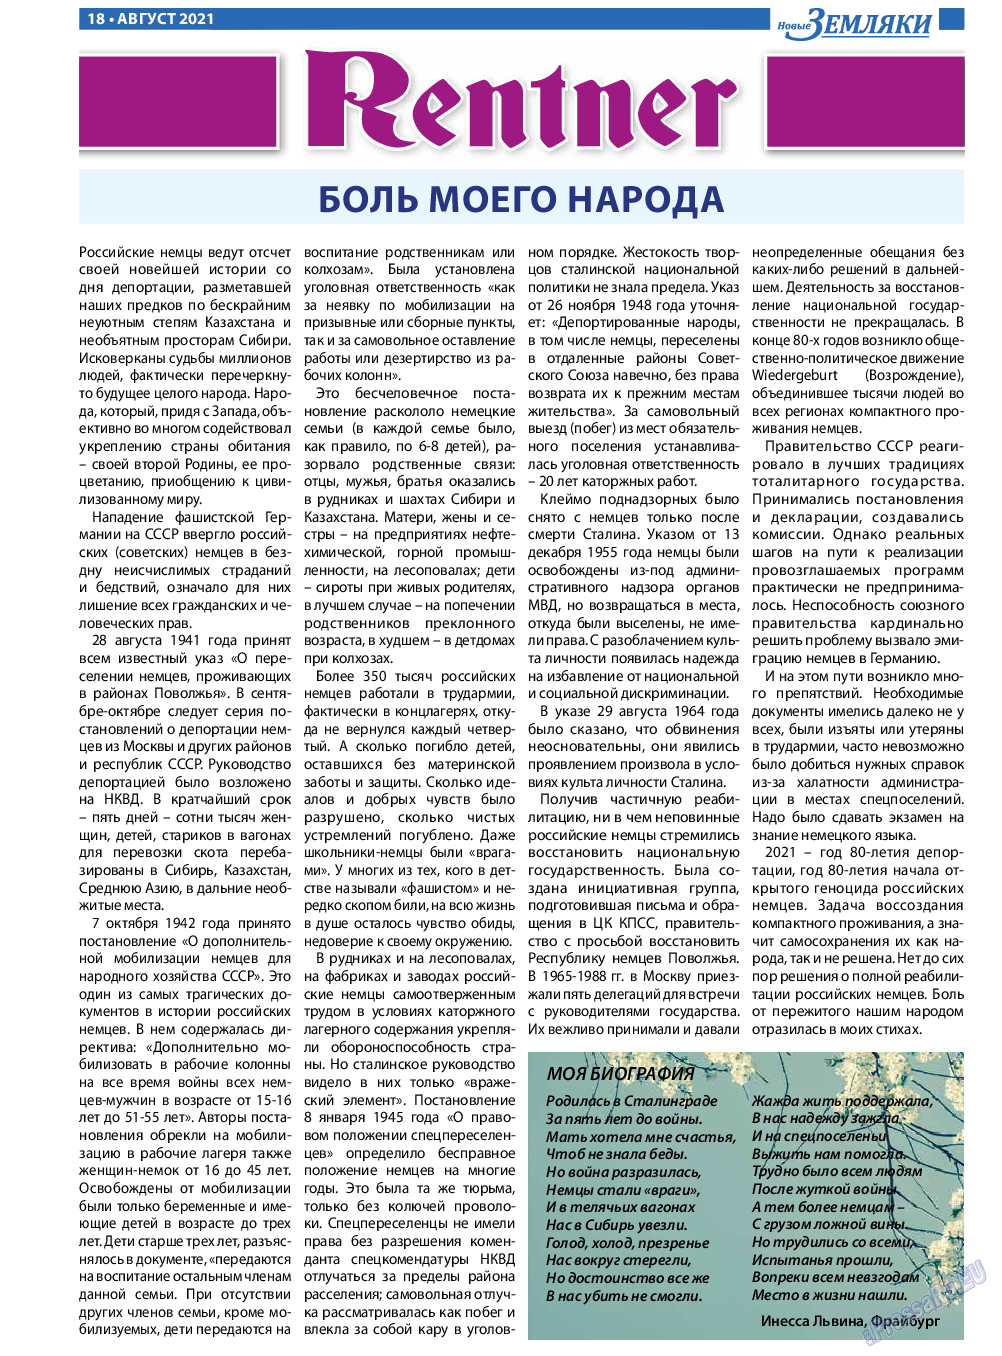 Новые Земляки, газета. 2021 №8 стр.18